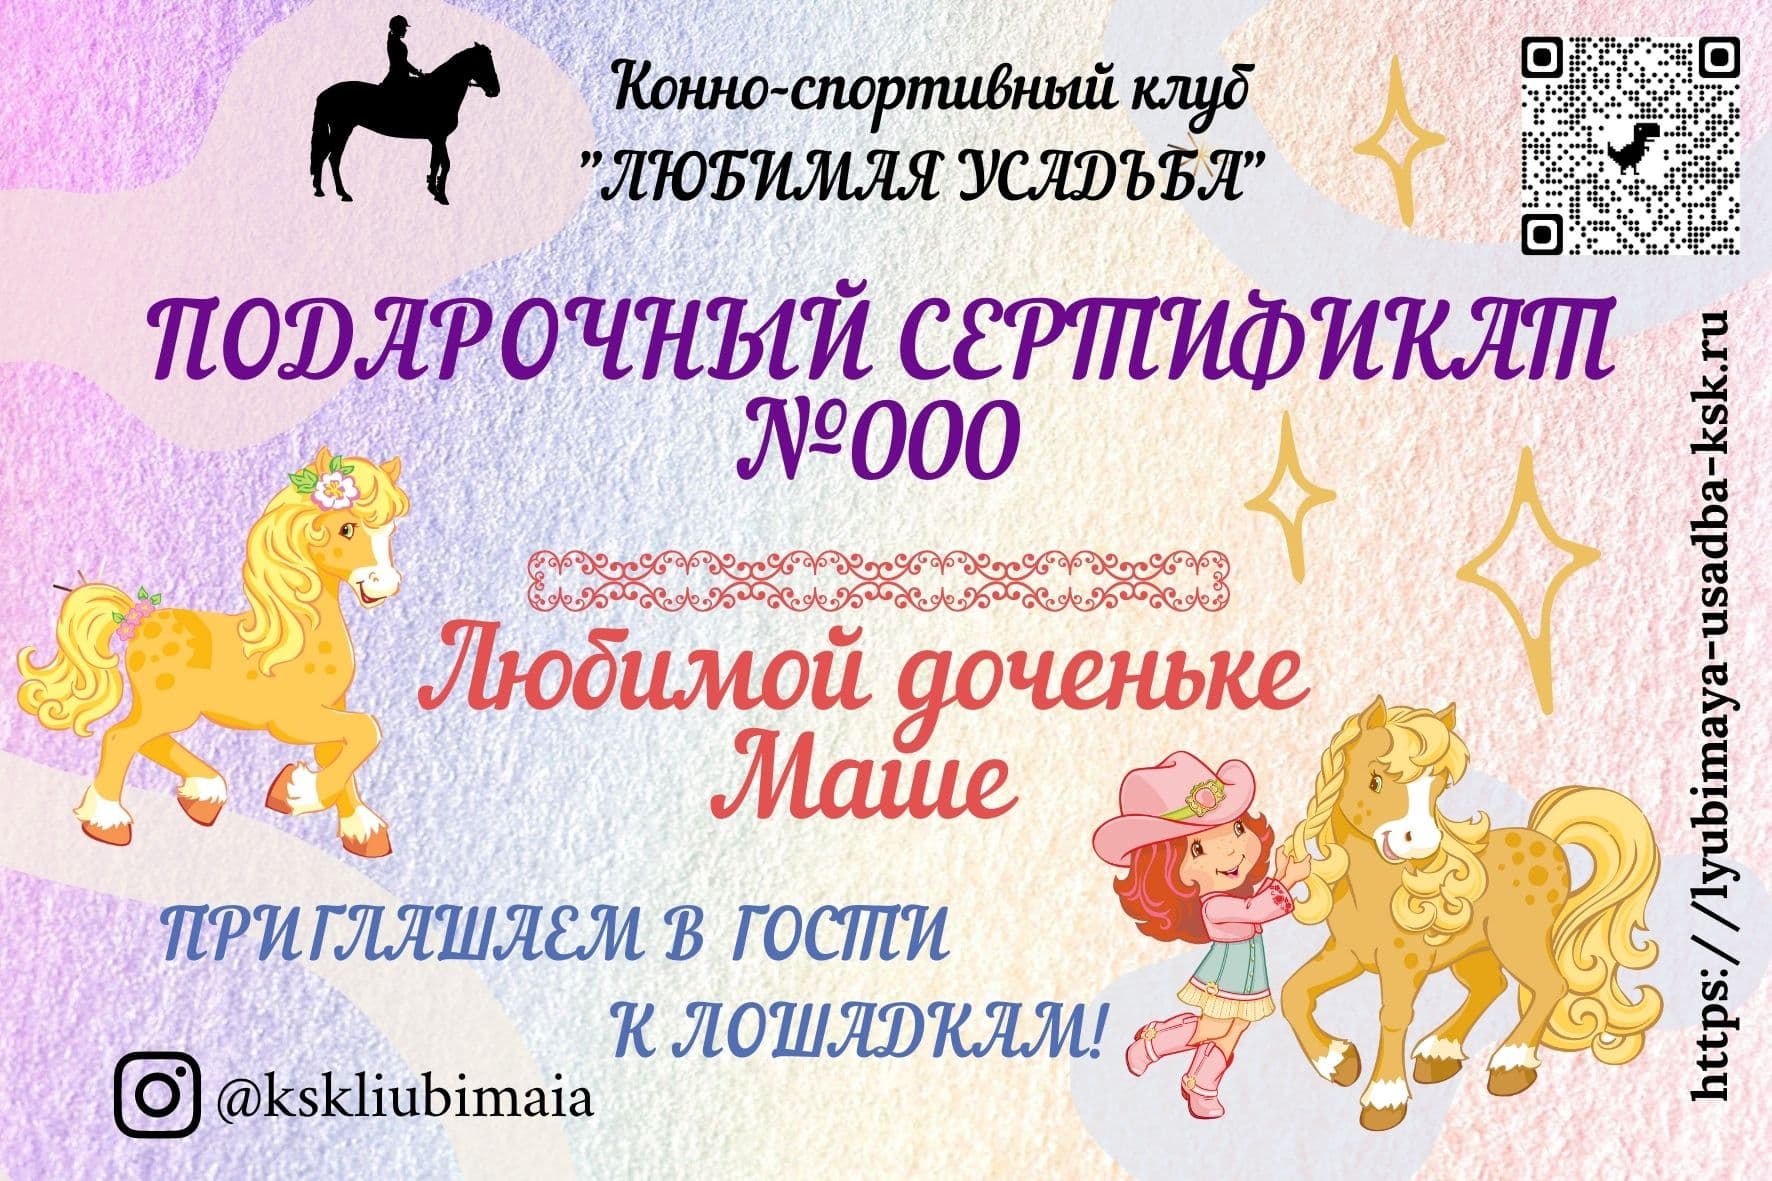 Подарочный сертификат на конную прогулку КСК 